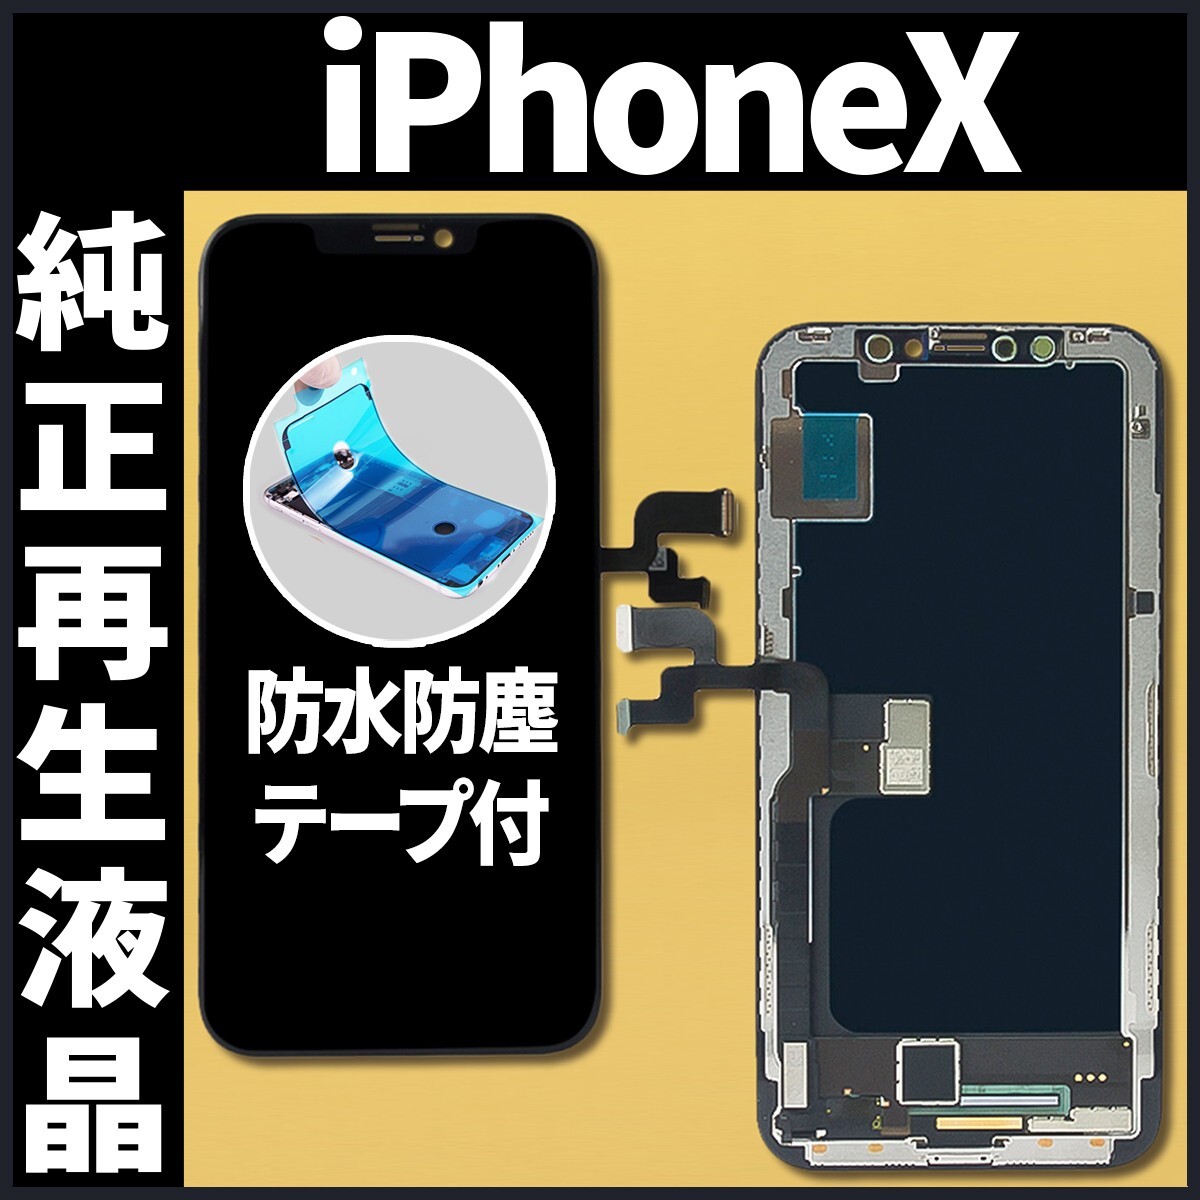 フロントパネル iPhoneX 純正再生品 防水テープ 純正液晶 工具無 自社再生 業者 リペア 画面割れ 修理 iphone ガラス割れ ディスプレイ.